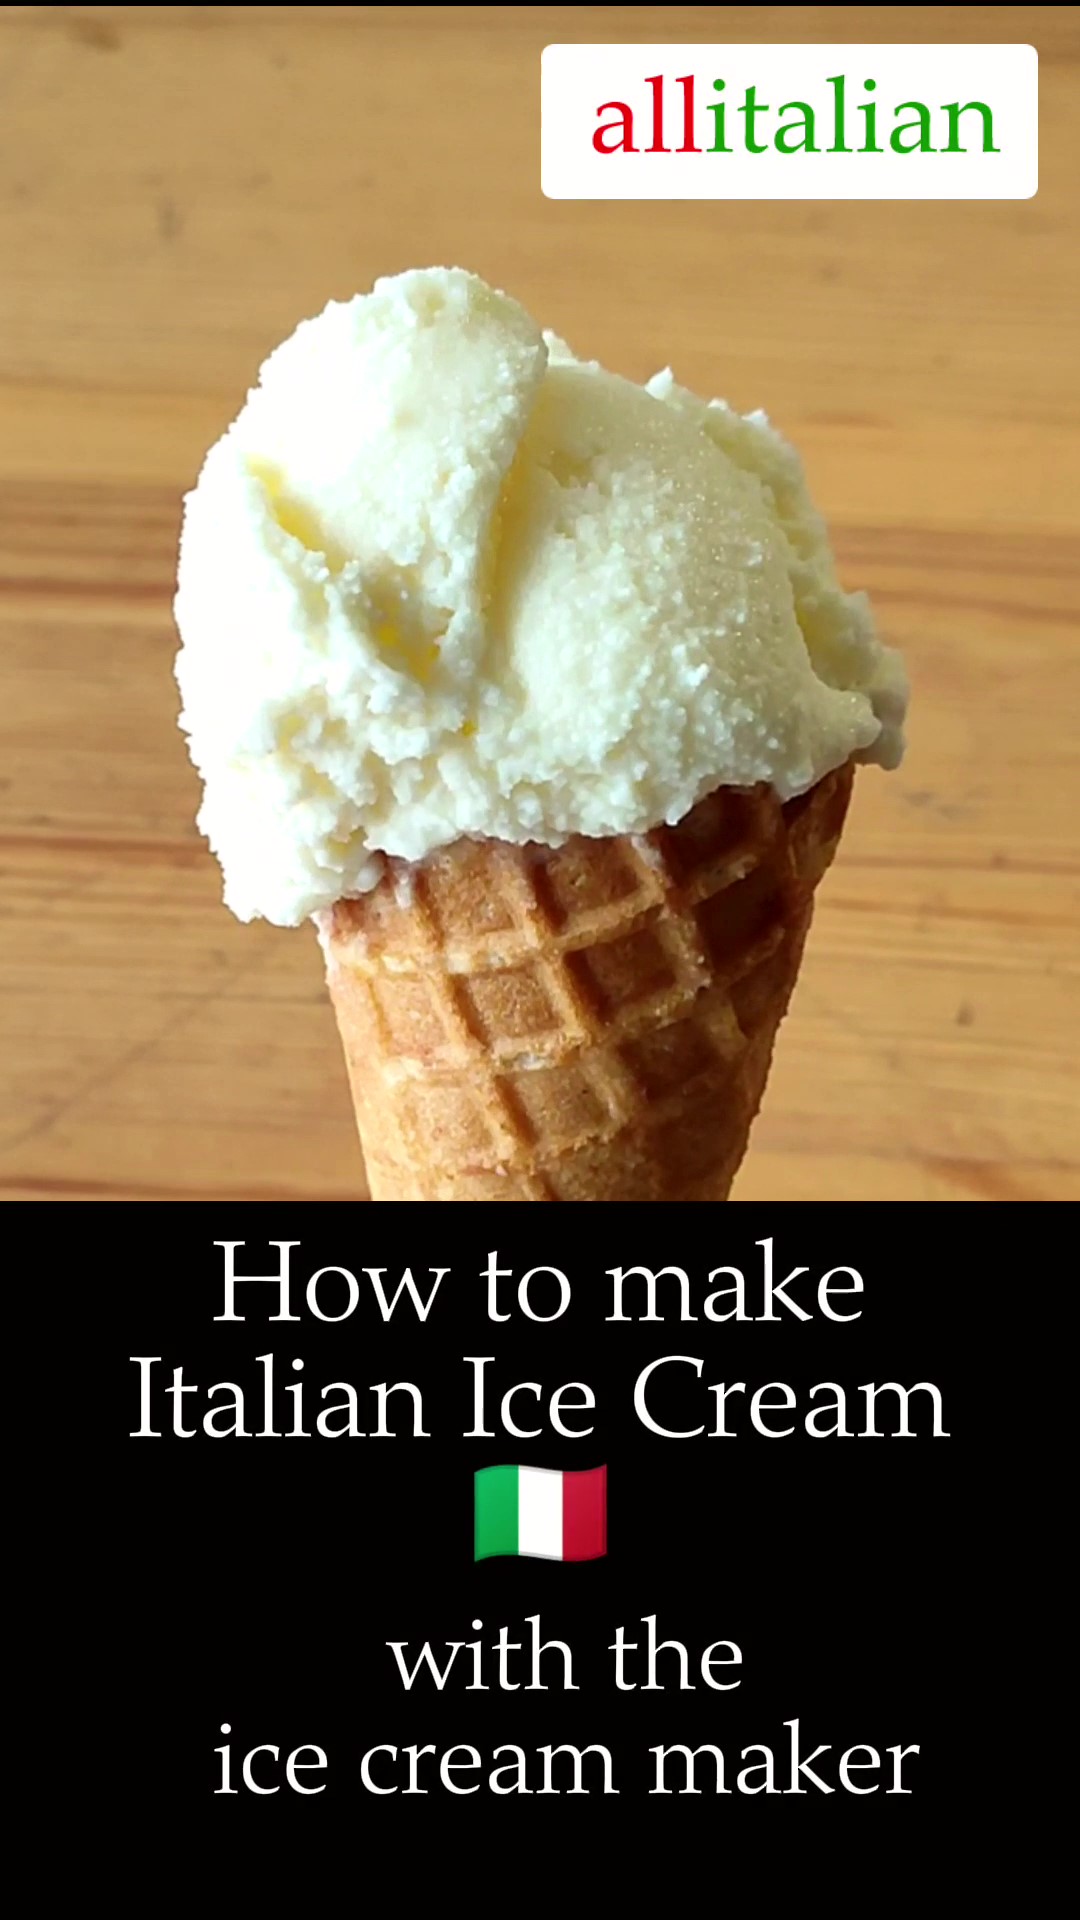 Well Kool Vertical Gelato Making Machine Italian Hard Ice Cream